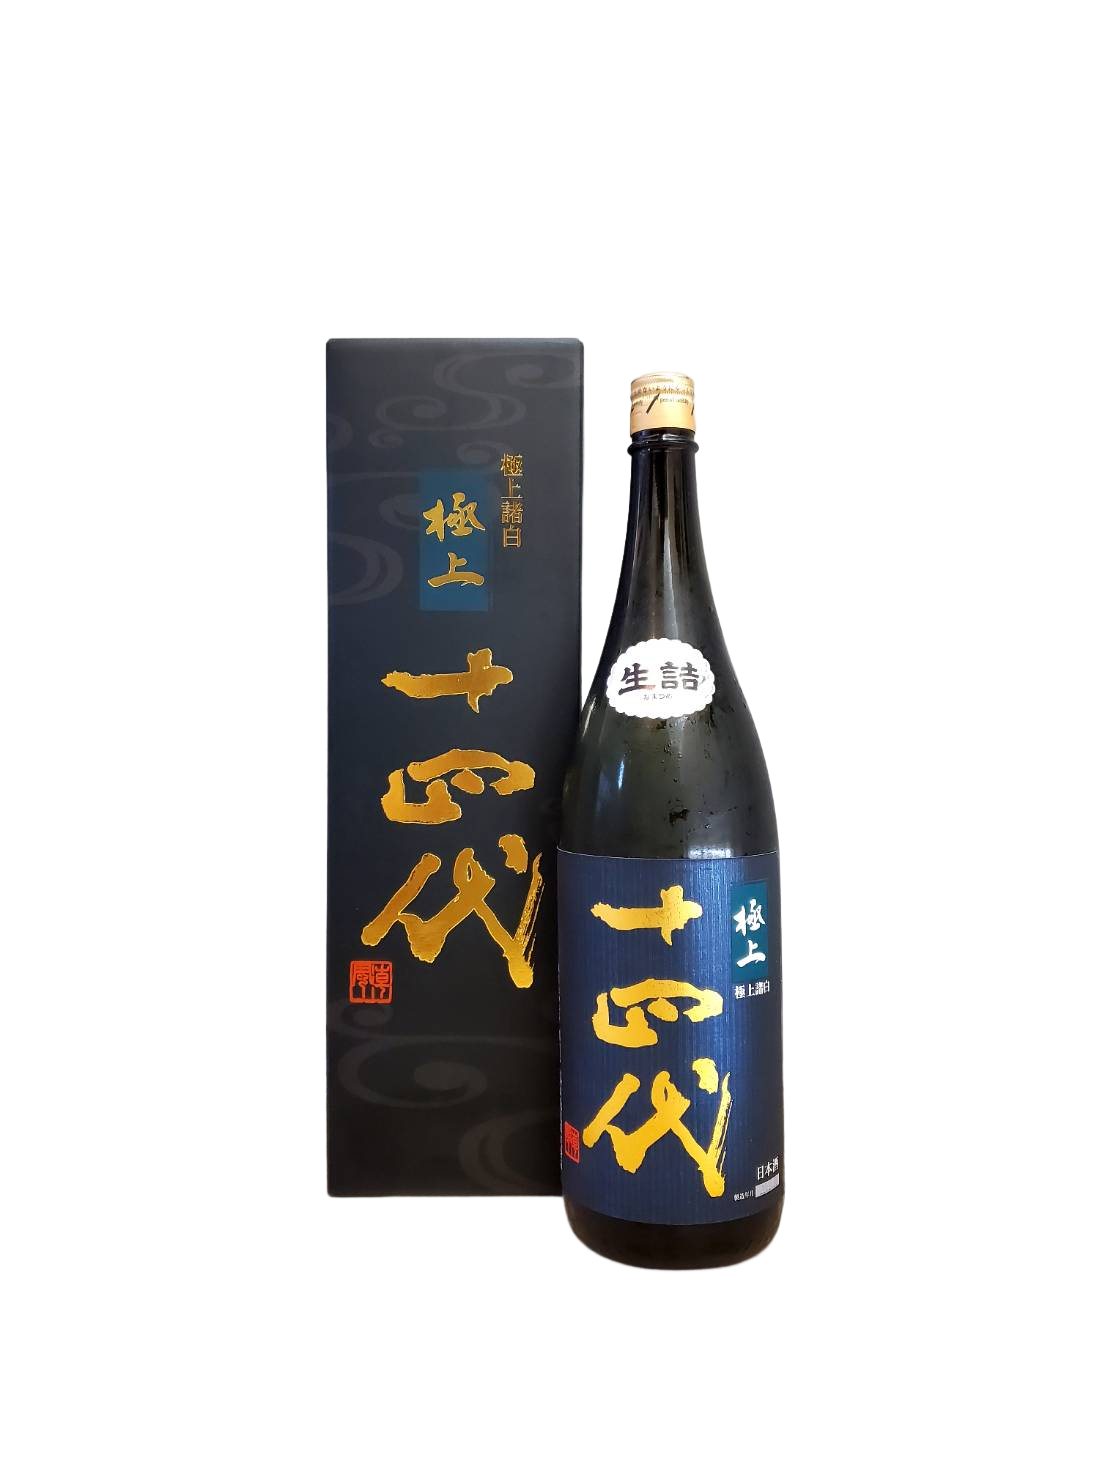 食品/飲料/酒十四代 極上諸白 純米大吟醸 720ml 最新平成30年4月製造 | zoidubai.com